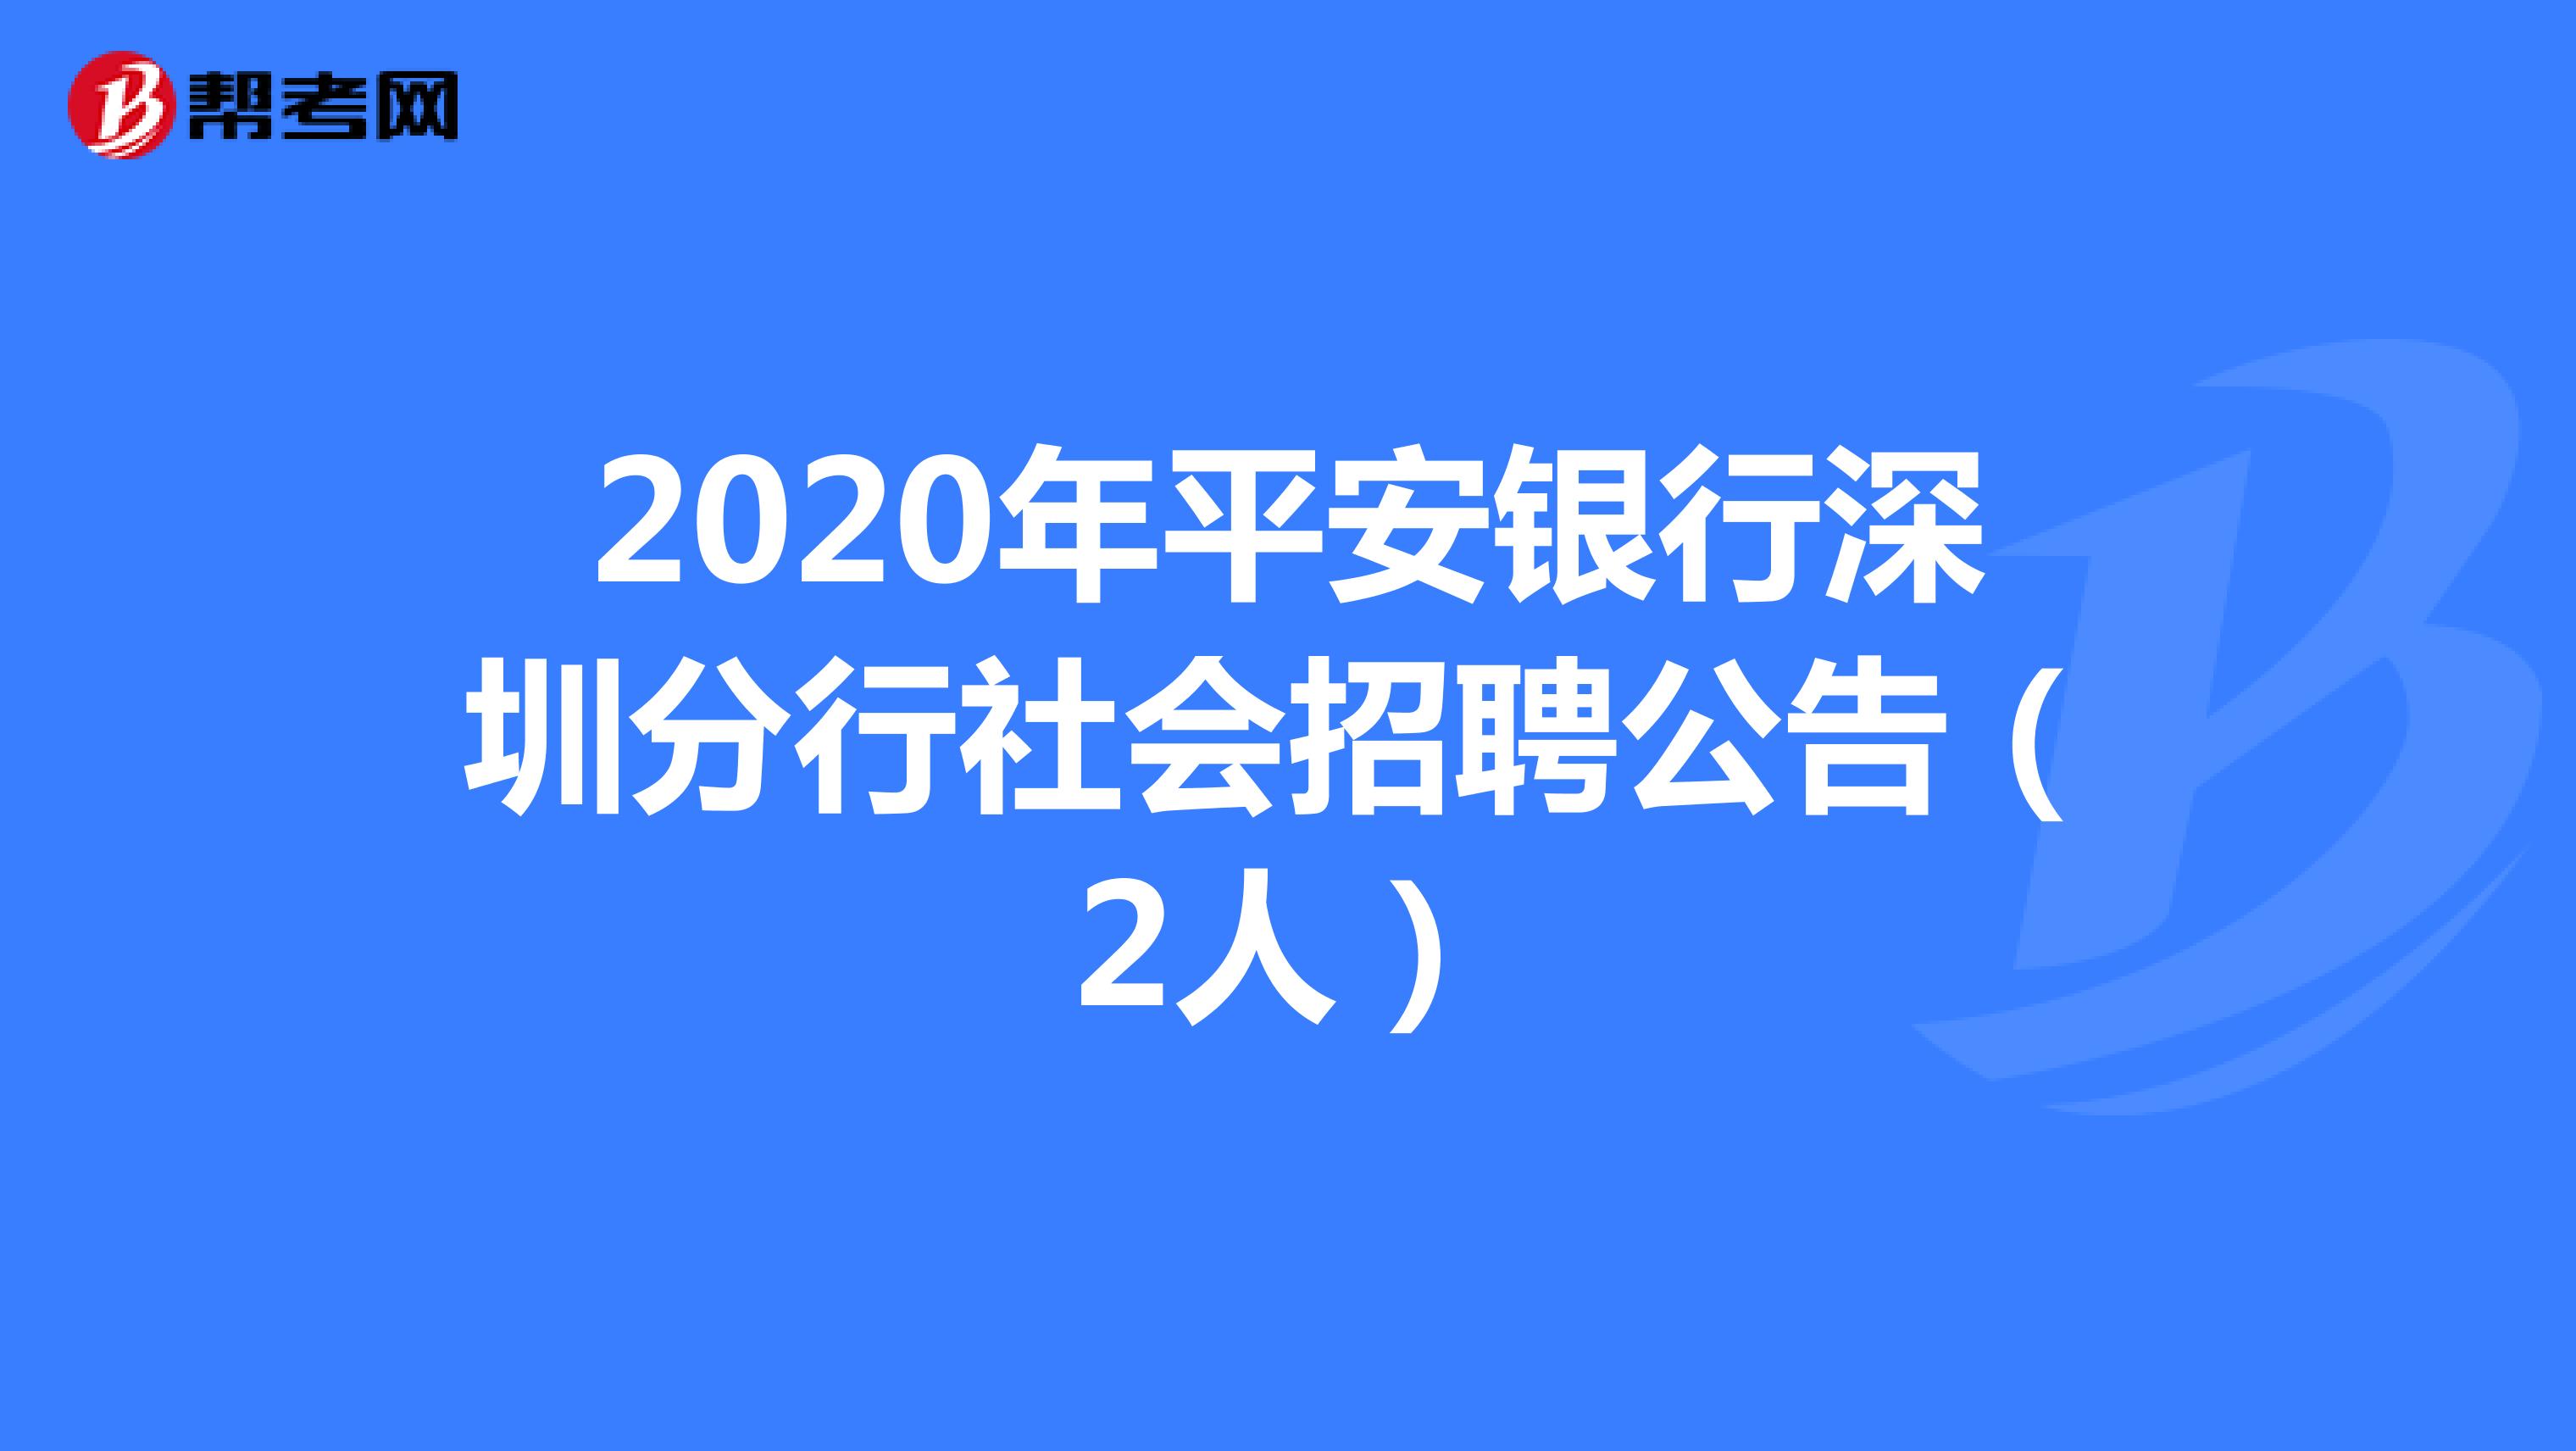 2020年平安银行深圳分行社会招聘公告（2人）